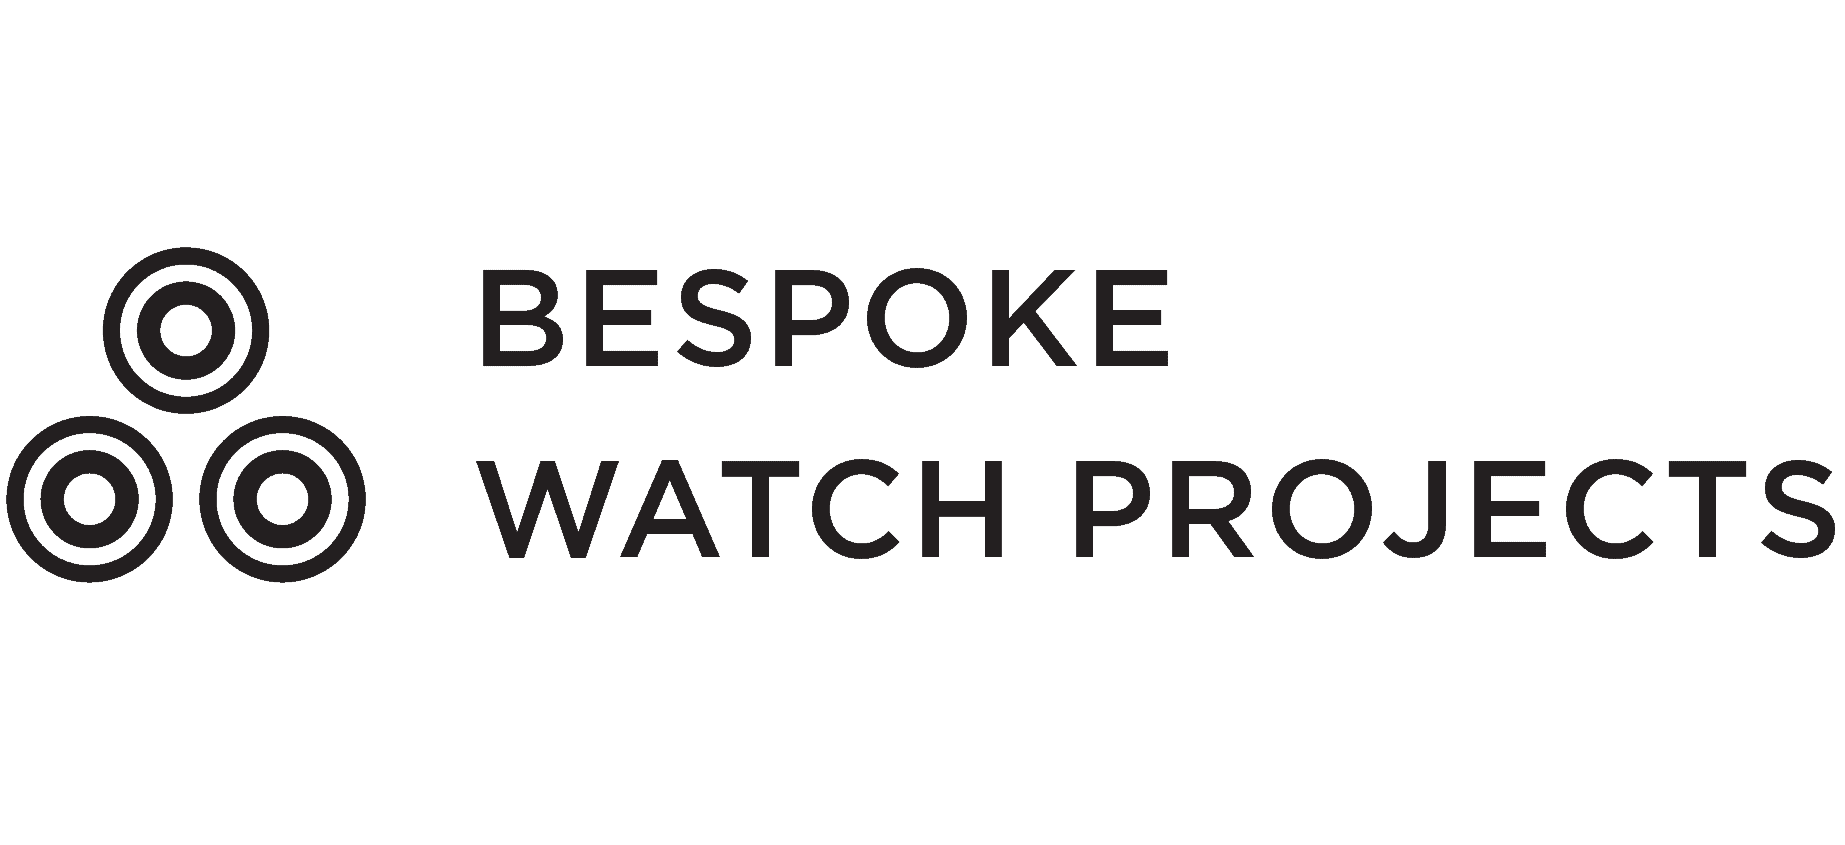 Bespoke Watch Projects